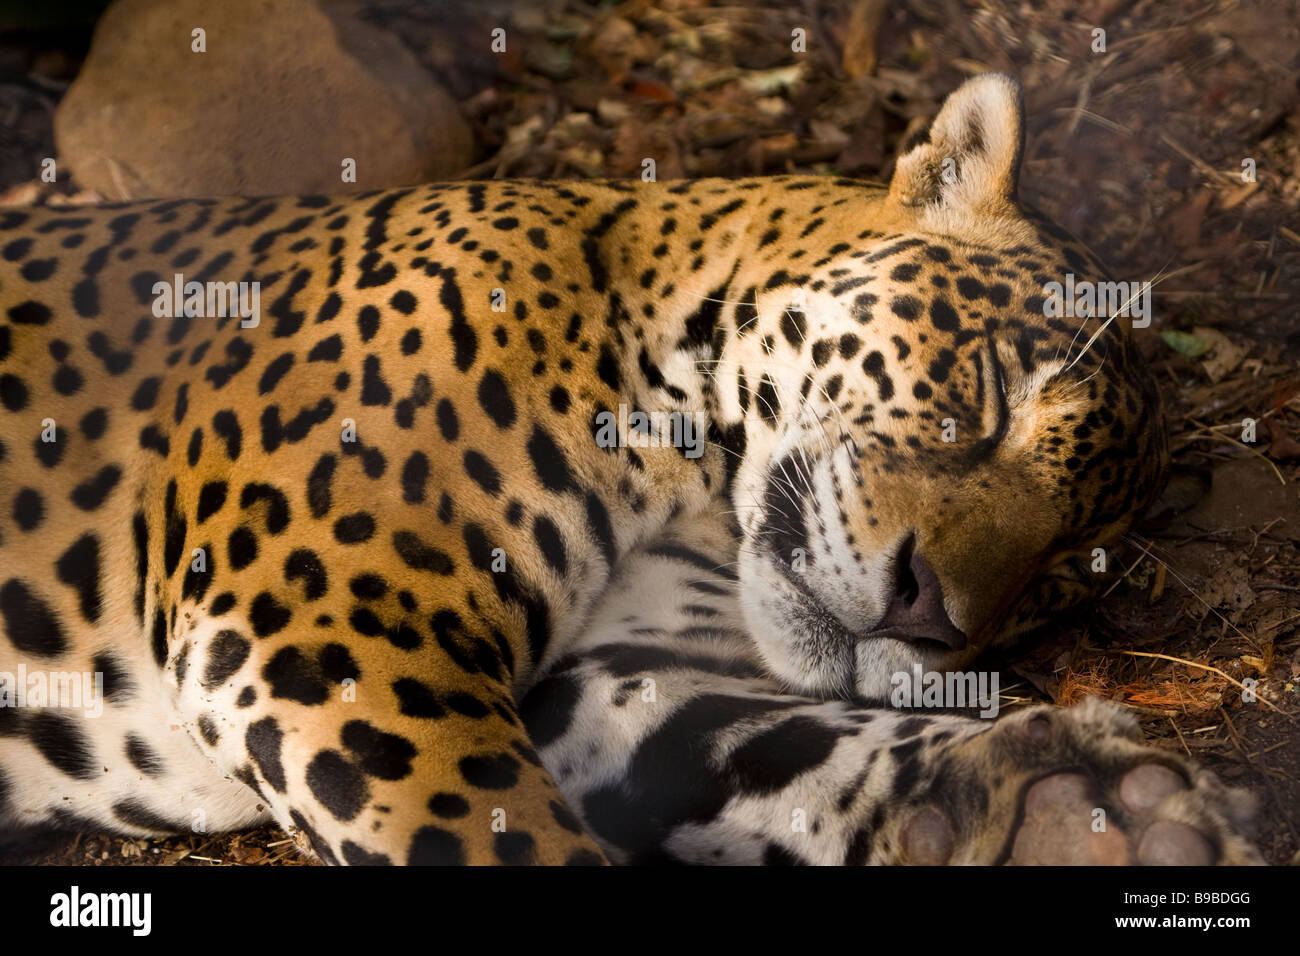 Jaguar (Panthera onca) taking a nap at Las Pumas Rescue Center (Centro de Rescate Las Pumas) in Cañas, Costa Rica. Stock Photo